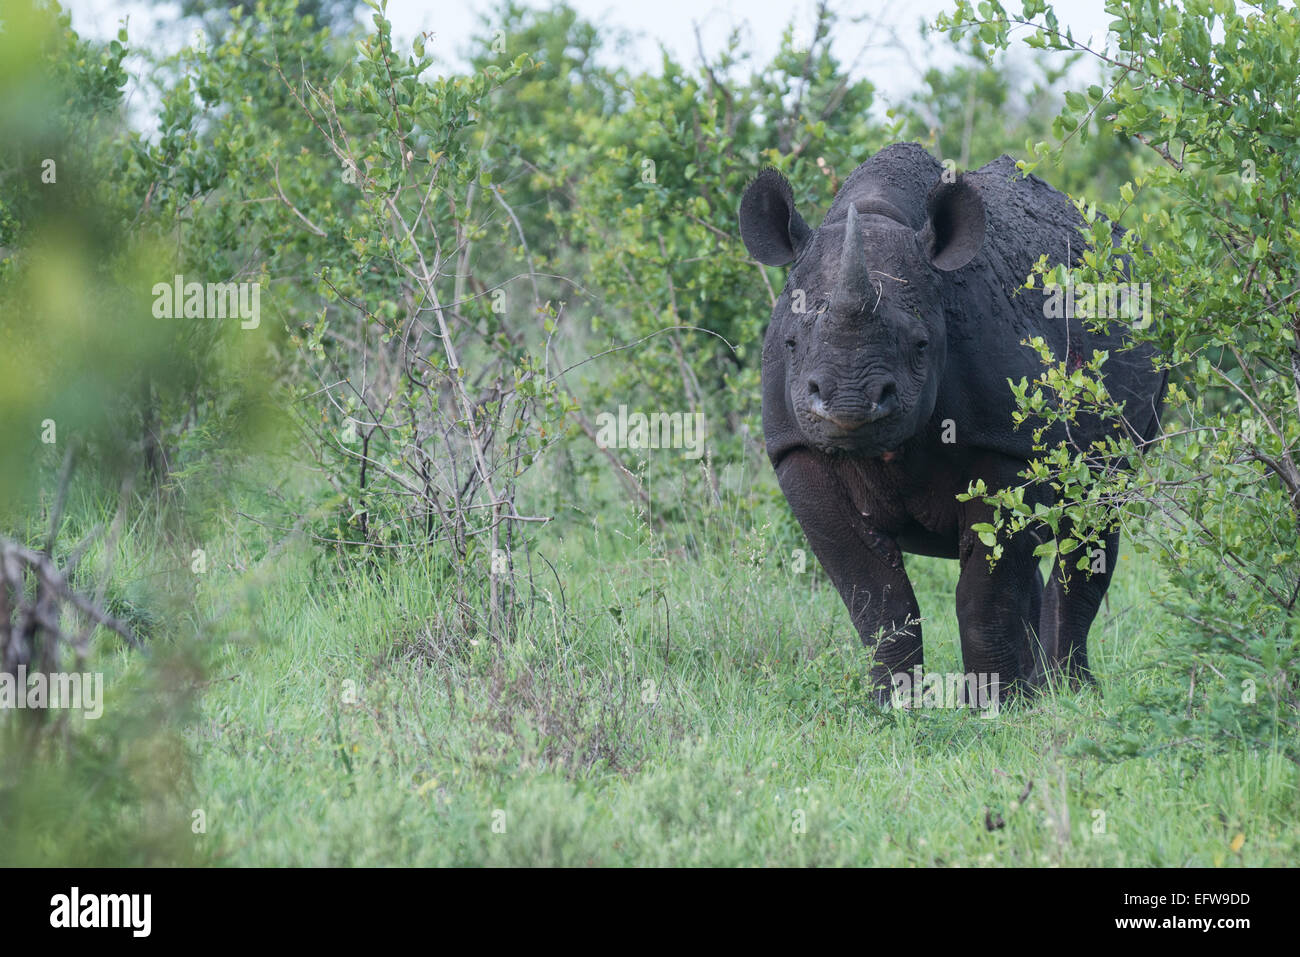 Le rhinocéros noir (Diceros bicornis) debout dans des buissons denses looking at camera, Kruger National Park, Afrique du Sud Banque D'Images